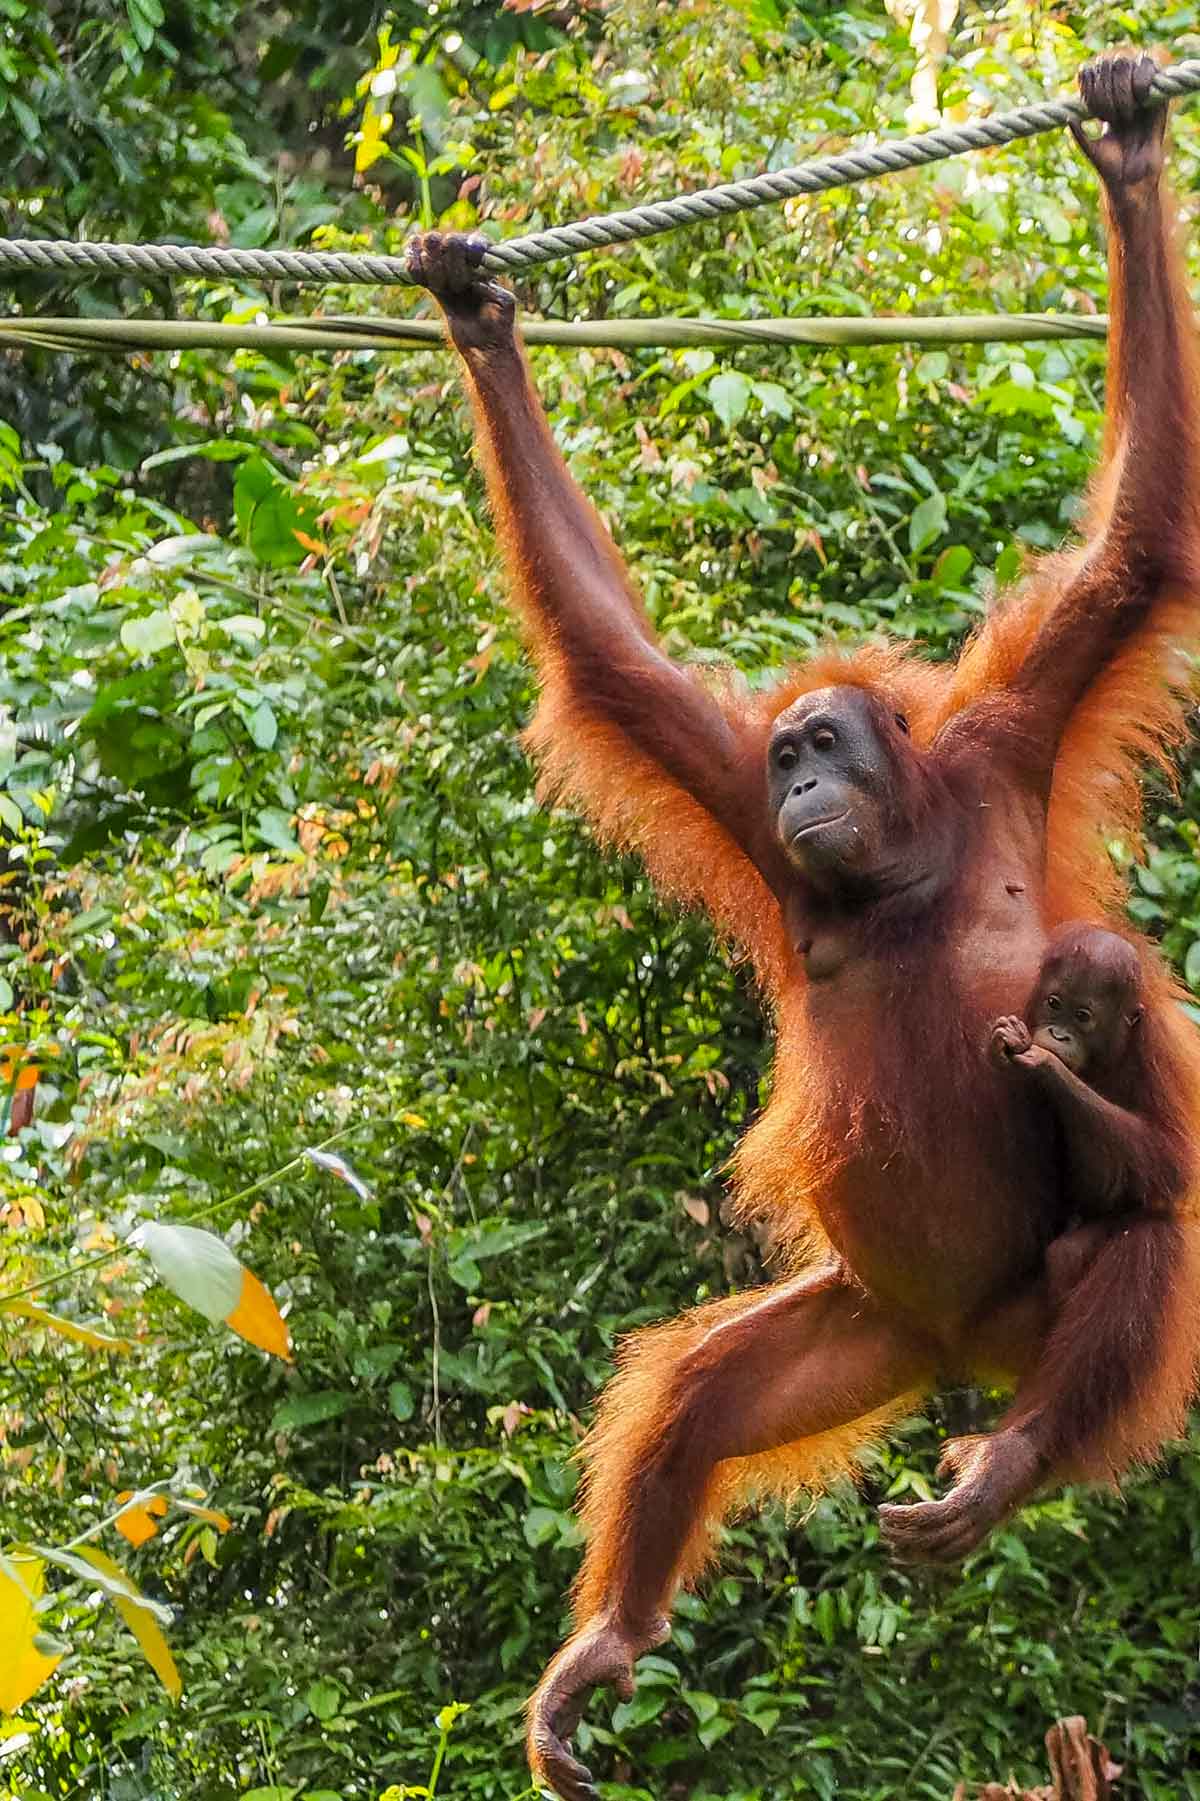 An Orangutan mum with a baby hanging off her at Sepilok Orangutan Rehabilitation Centre